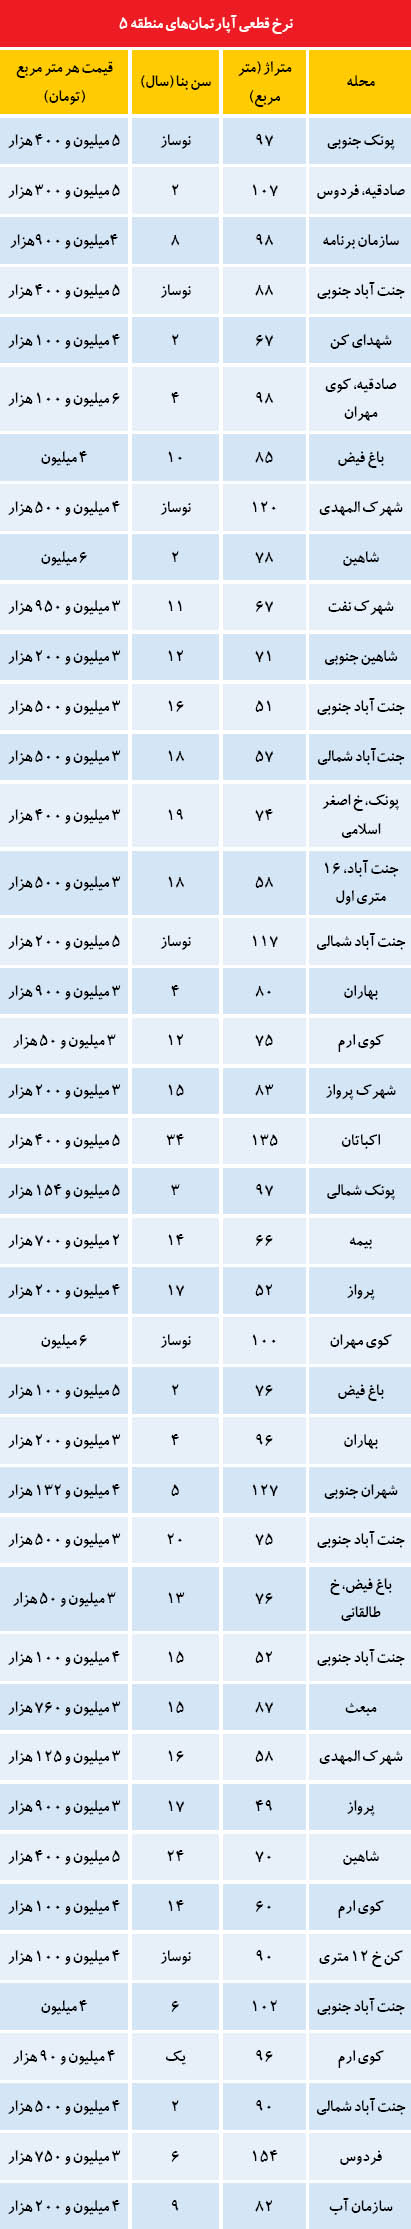 قیمت آپارتمان در منطقه 5 تهران /جدول